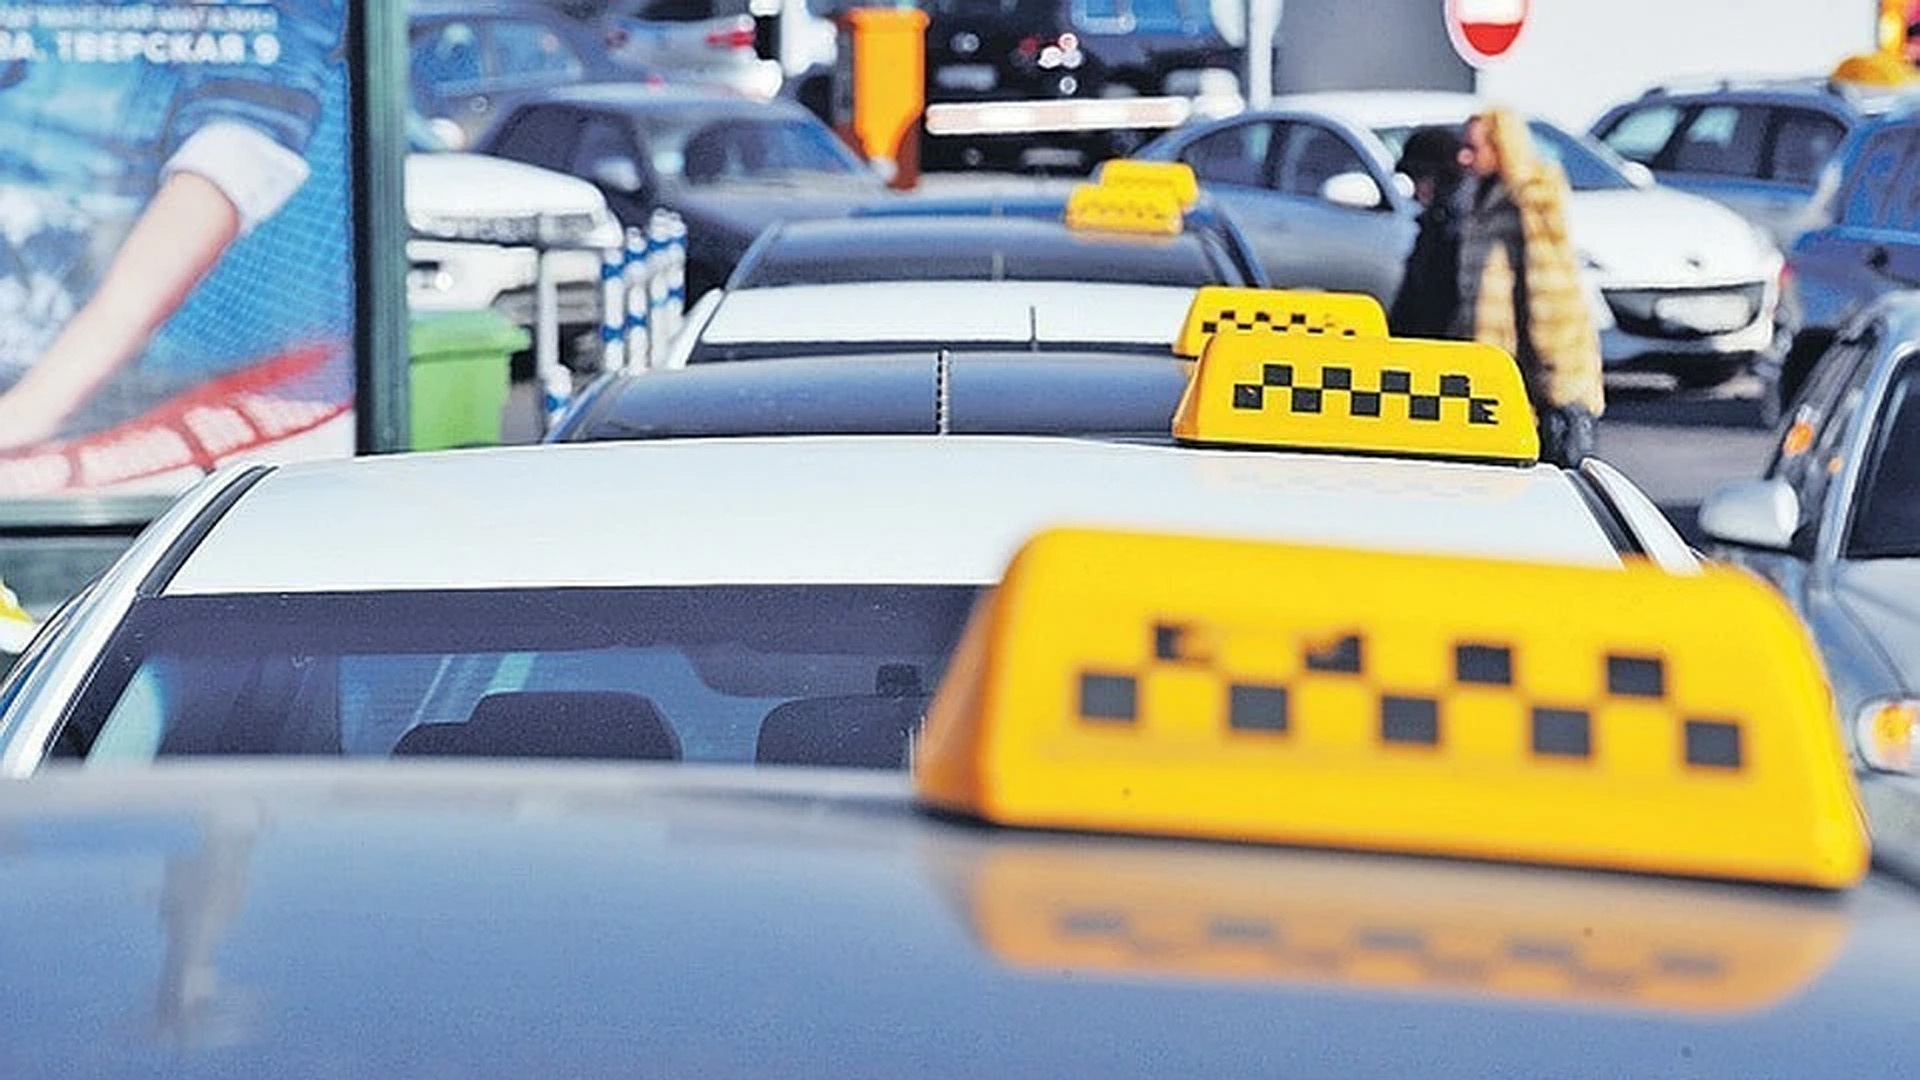 Профильная комиссия петербургского заксобрания поддержала введение цвета машин такси